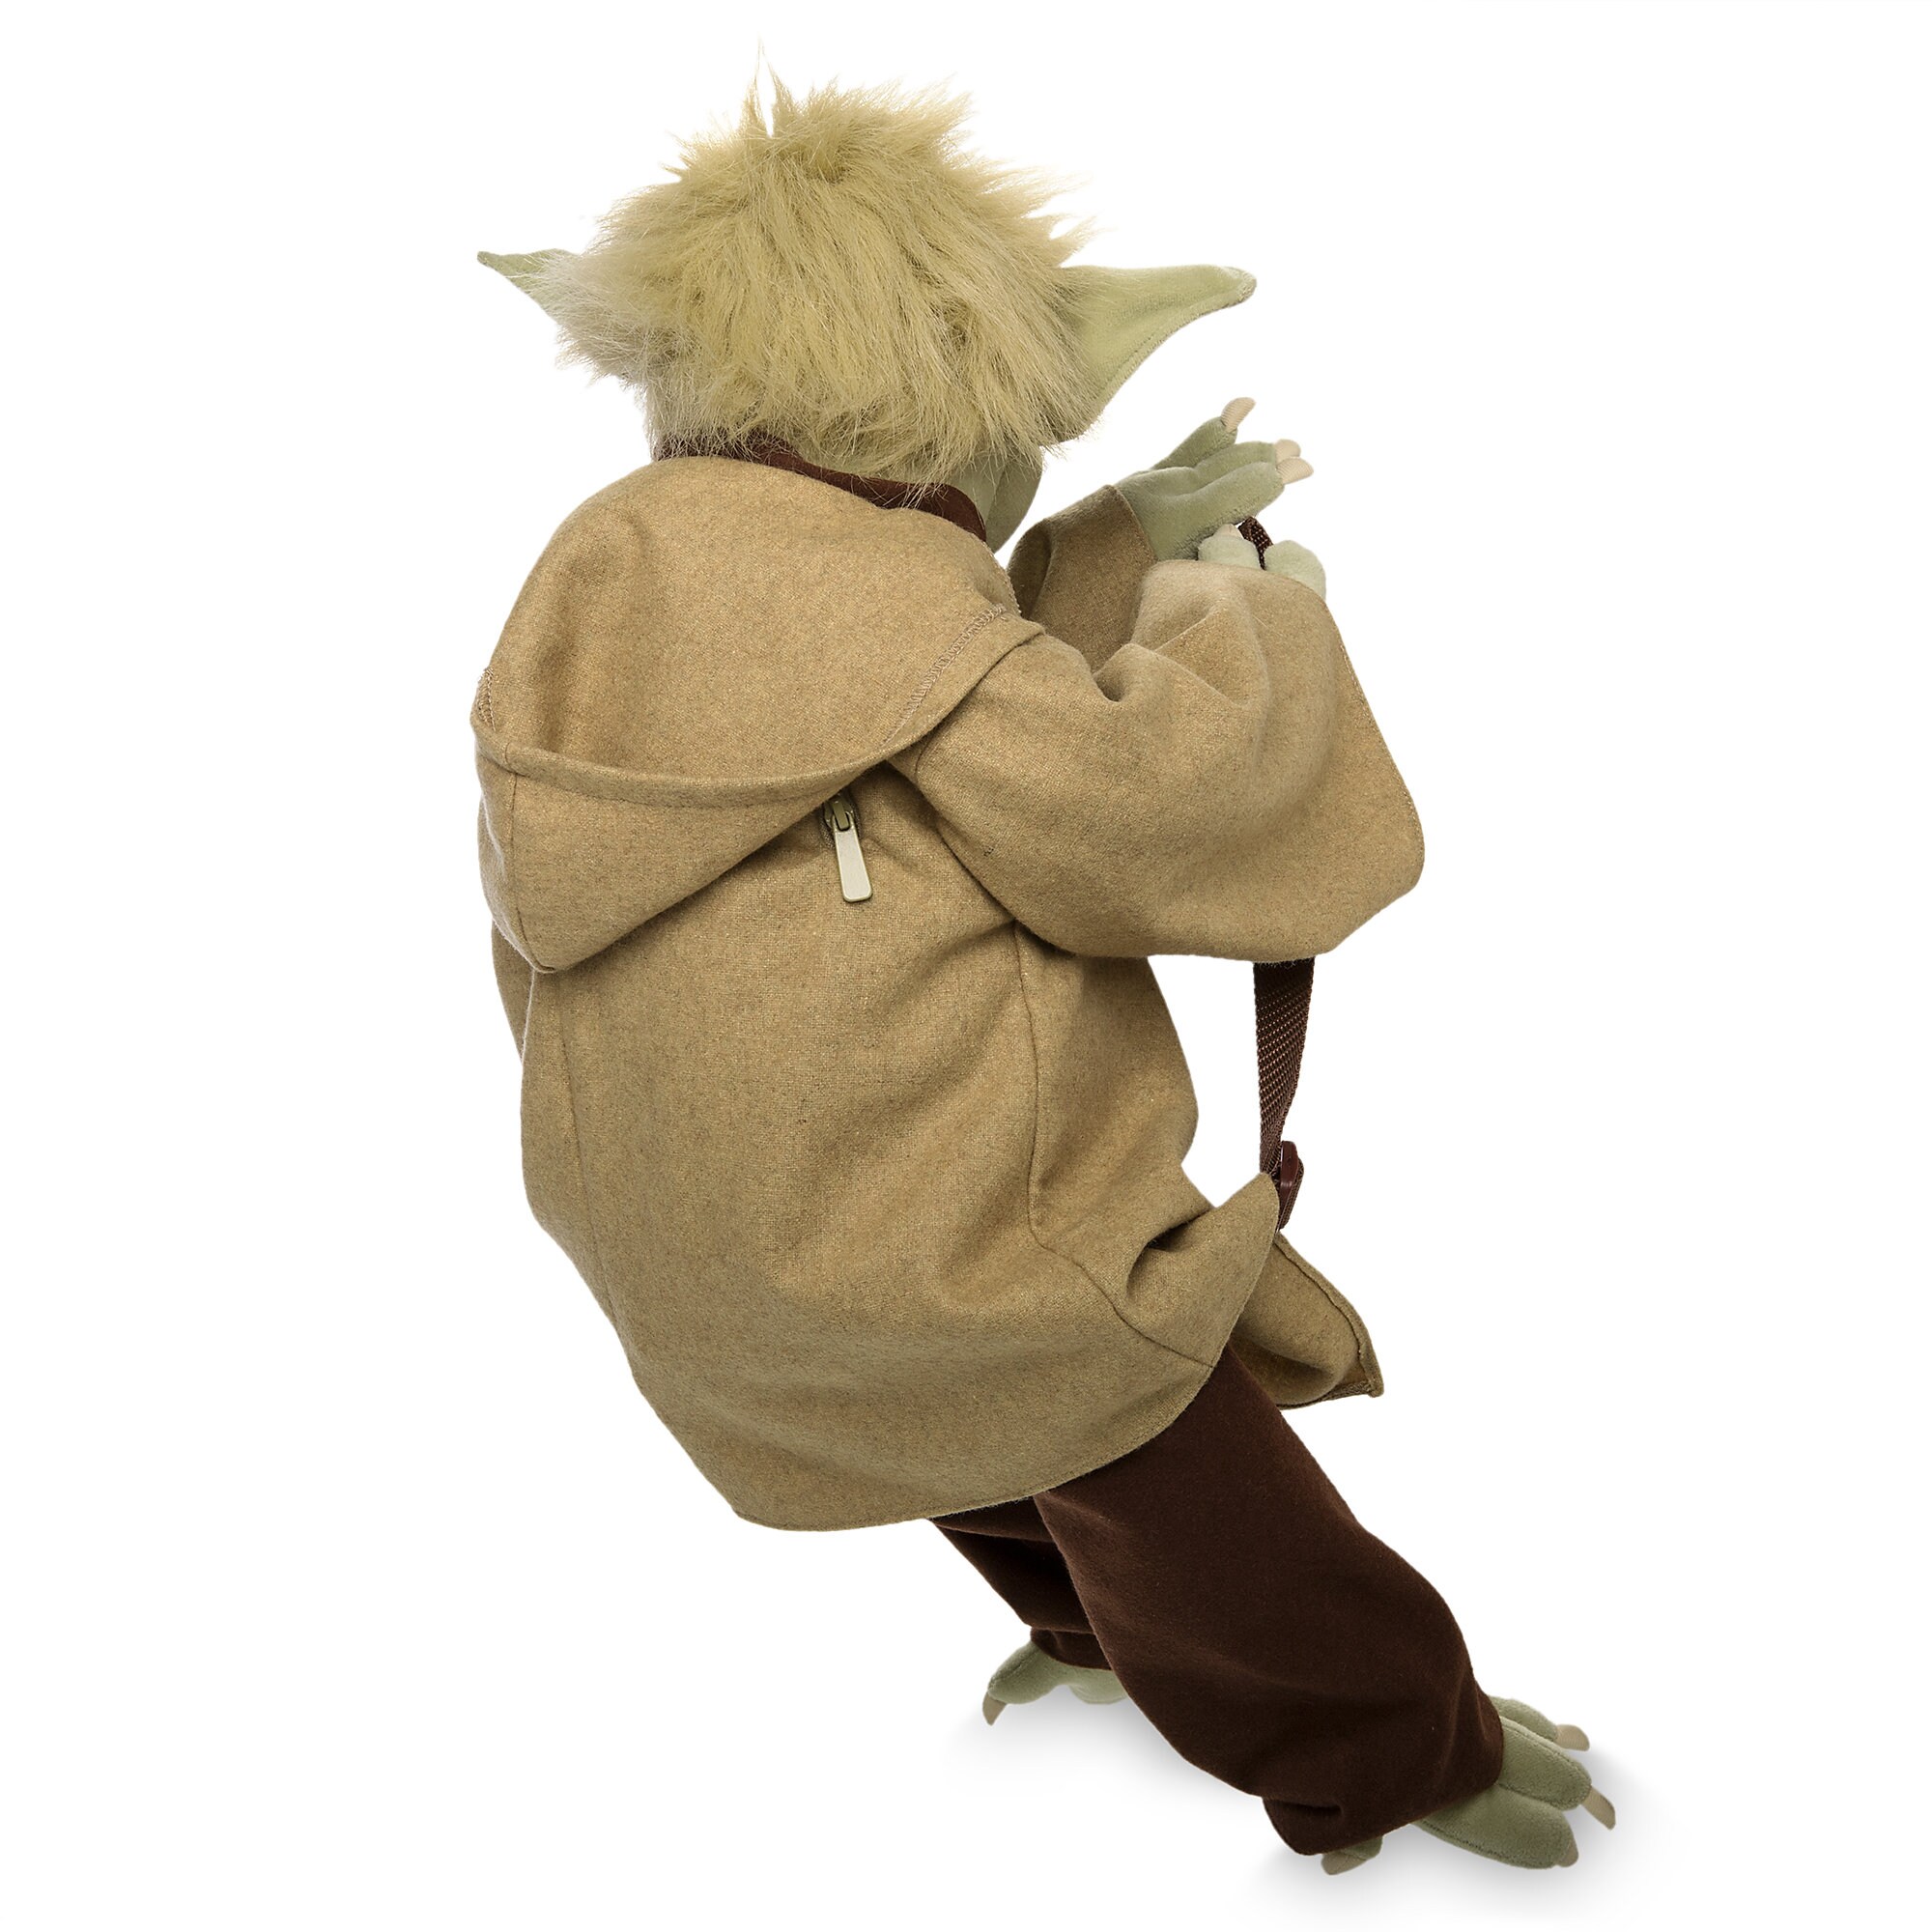 Yoda Plush Backpack - Star Wars